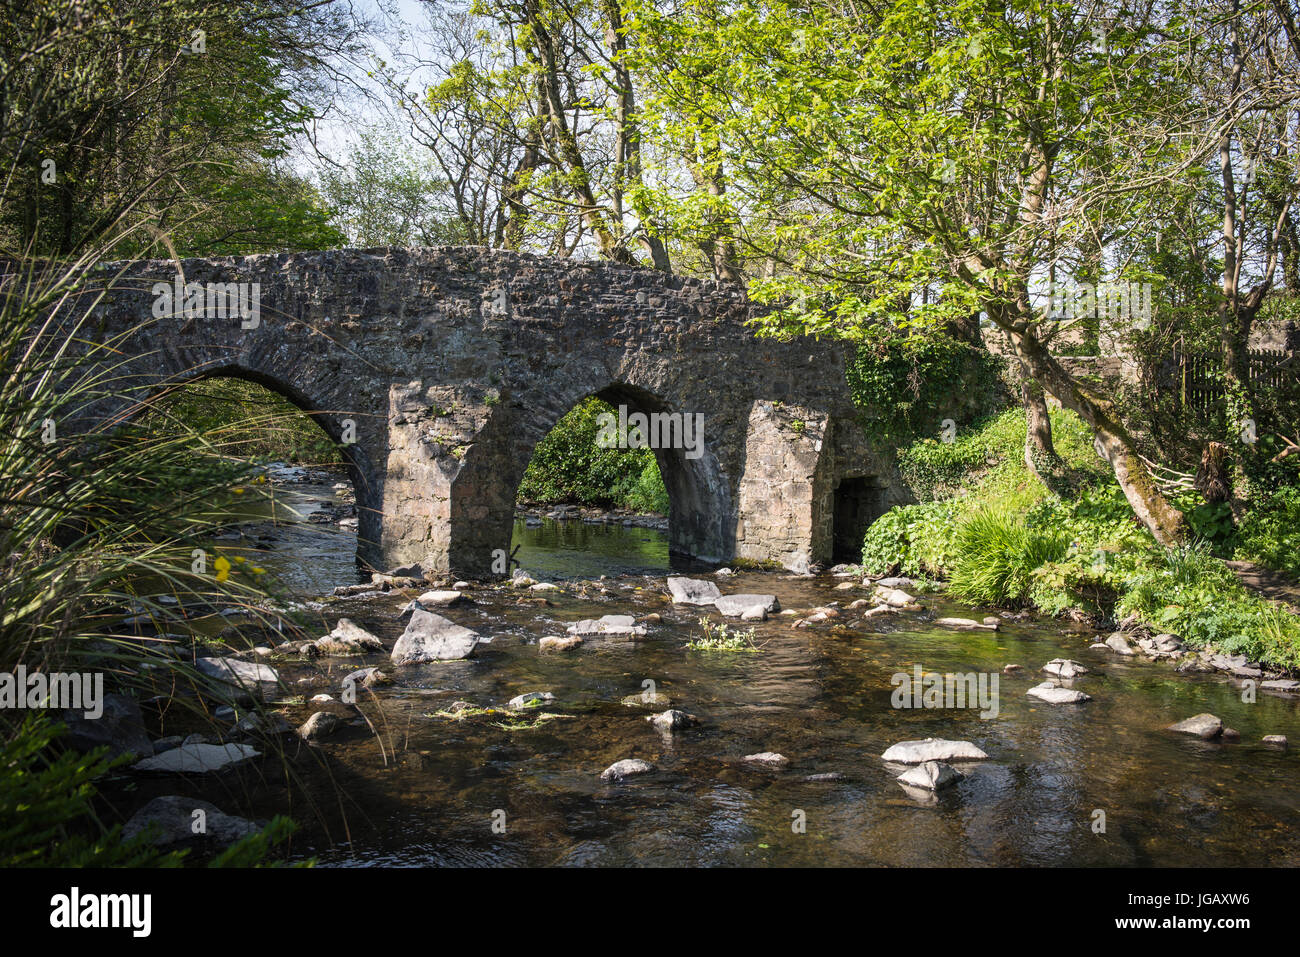 Monk's Bridge, Ballasalla, Isle of Man. Stock Photo